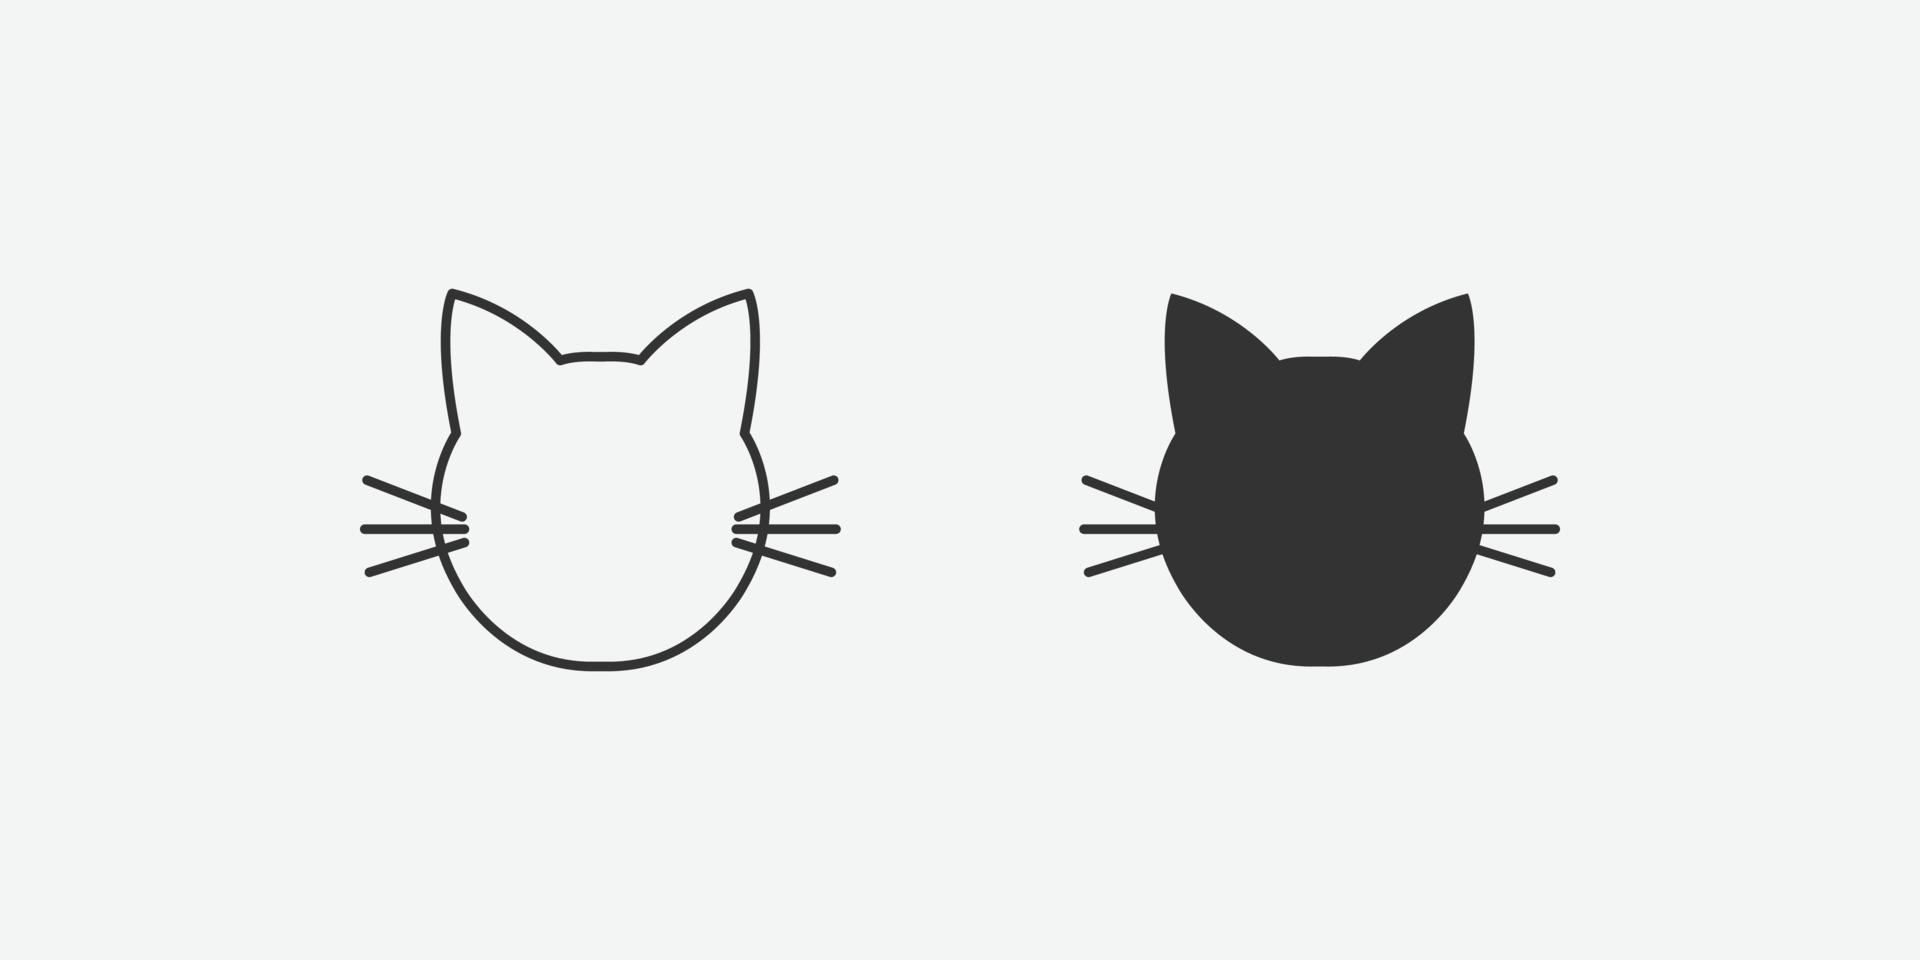 icône de vecteur de chat et symbole pour animaux de compagnie